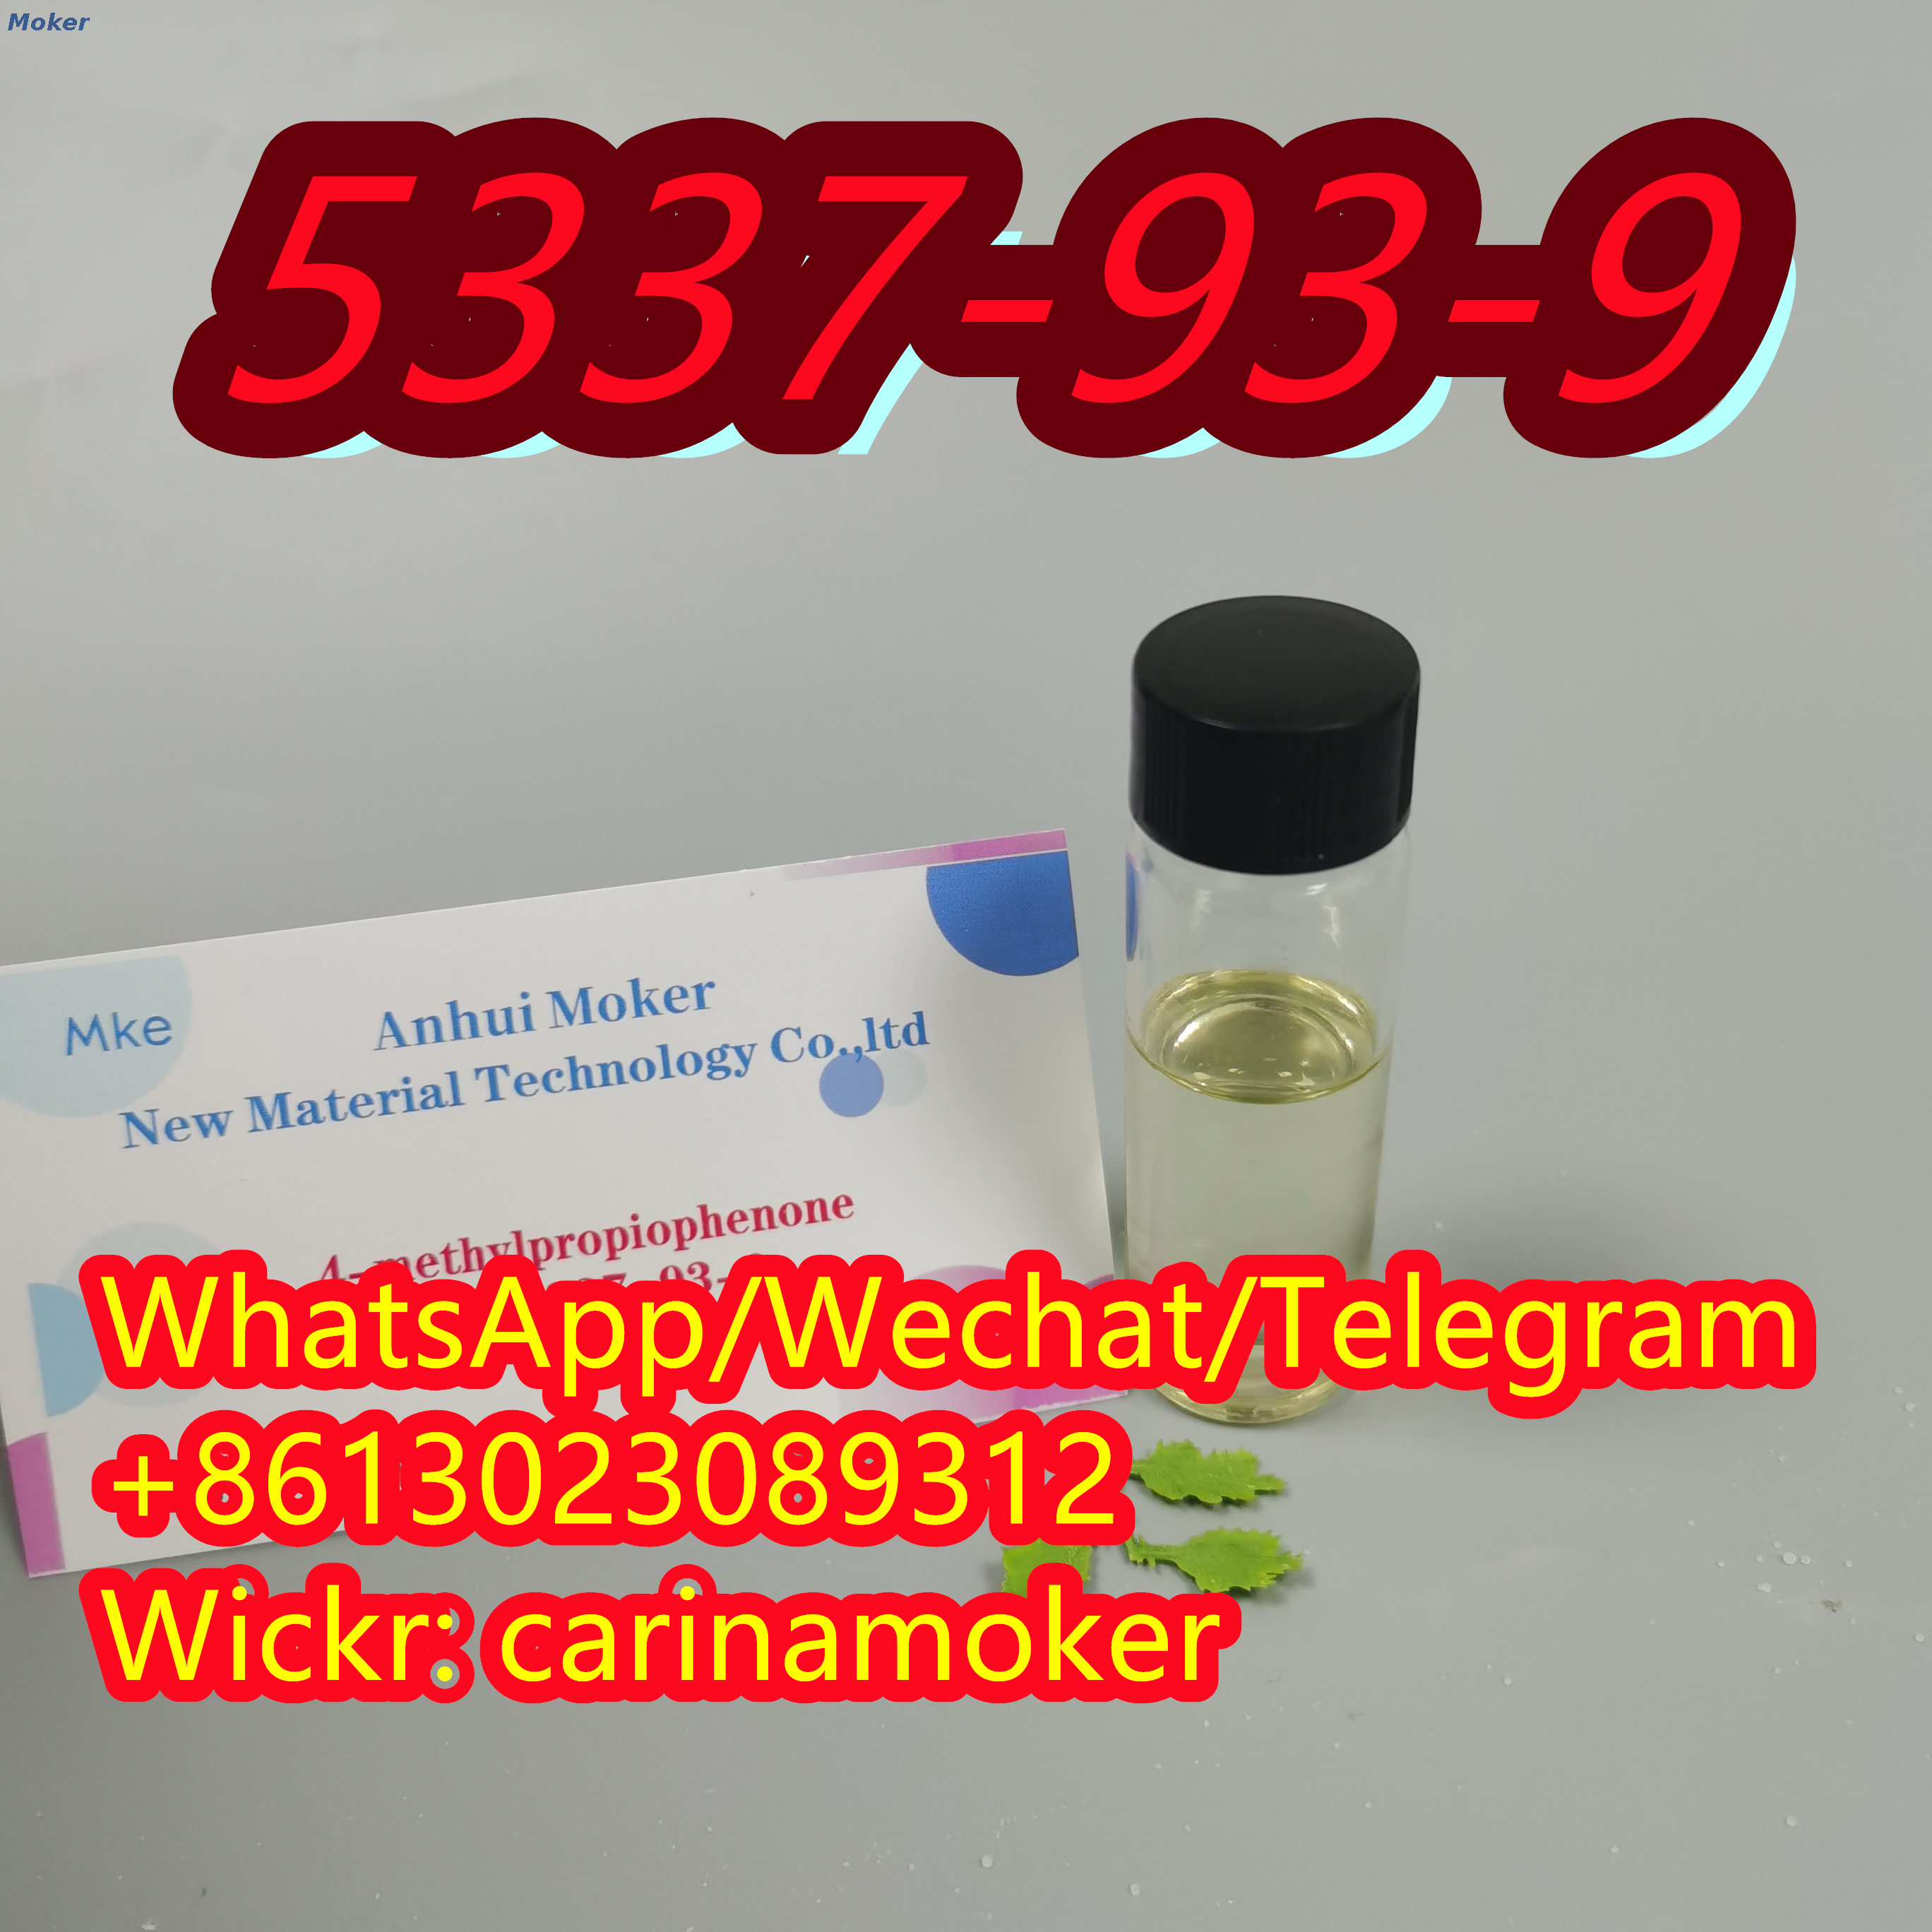 Hochwertiges 4-Methylpropiophenon 5337-93-9 mit sicherer Lieferung